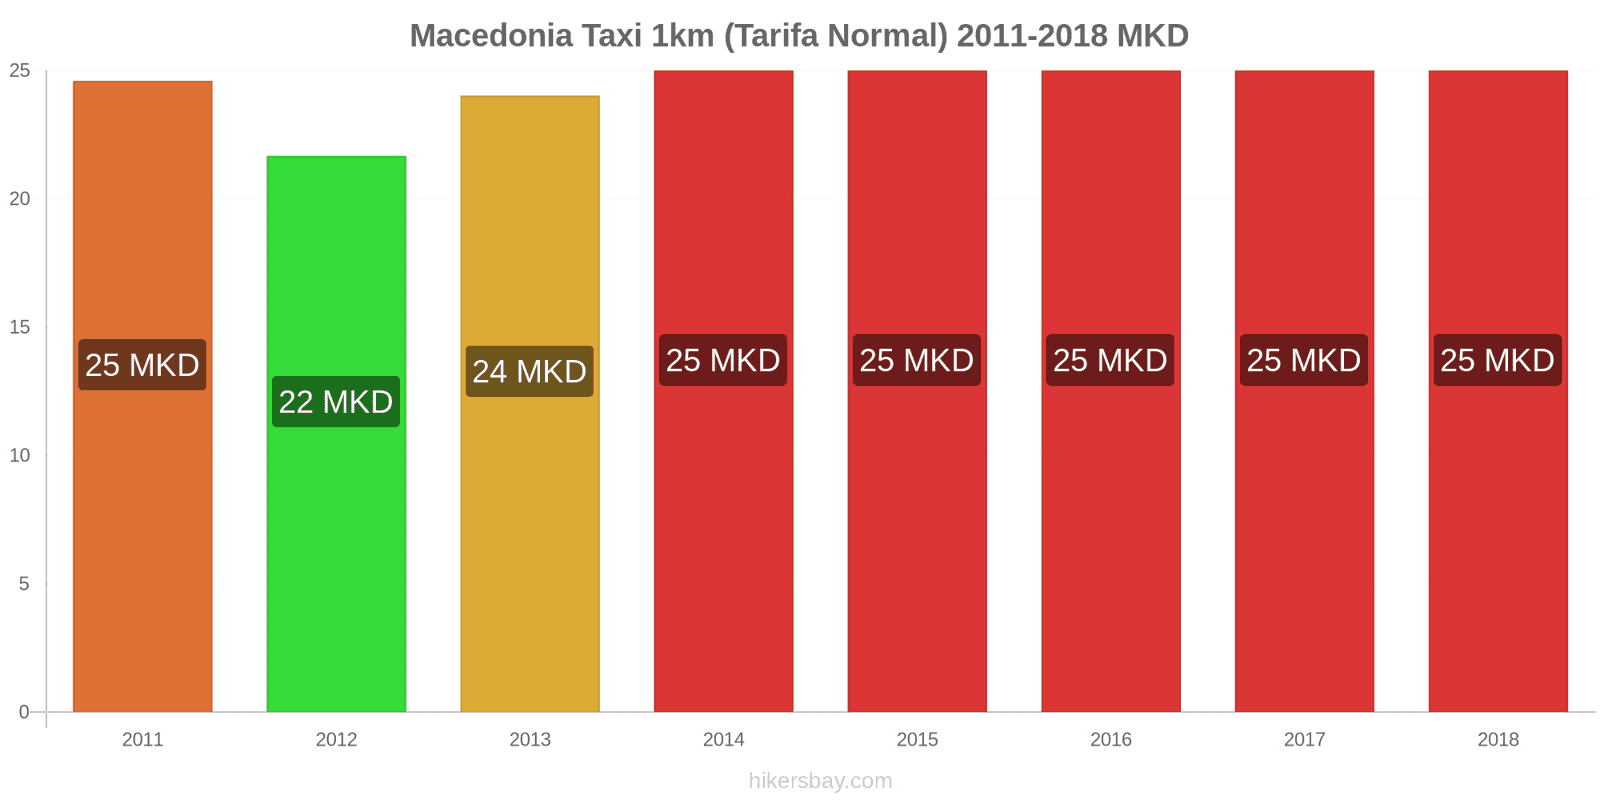 Macedonia cambios de precios Taxi 1km (tarifa normal) hikersbay.com